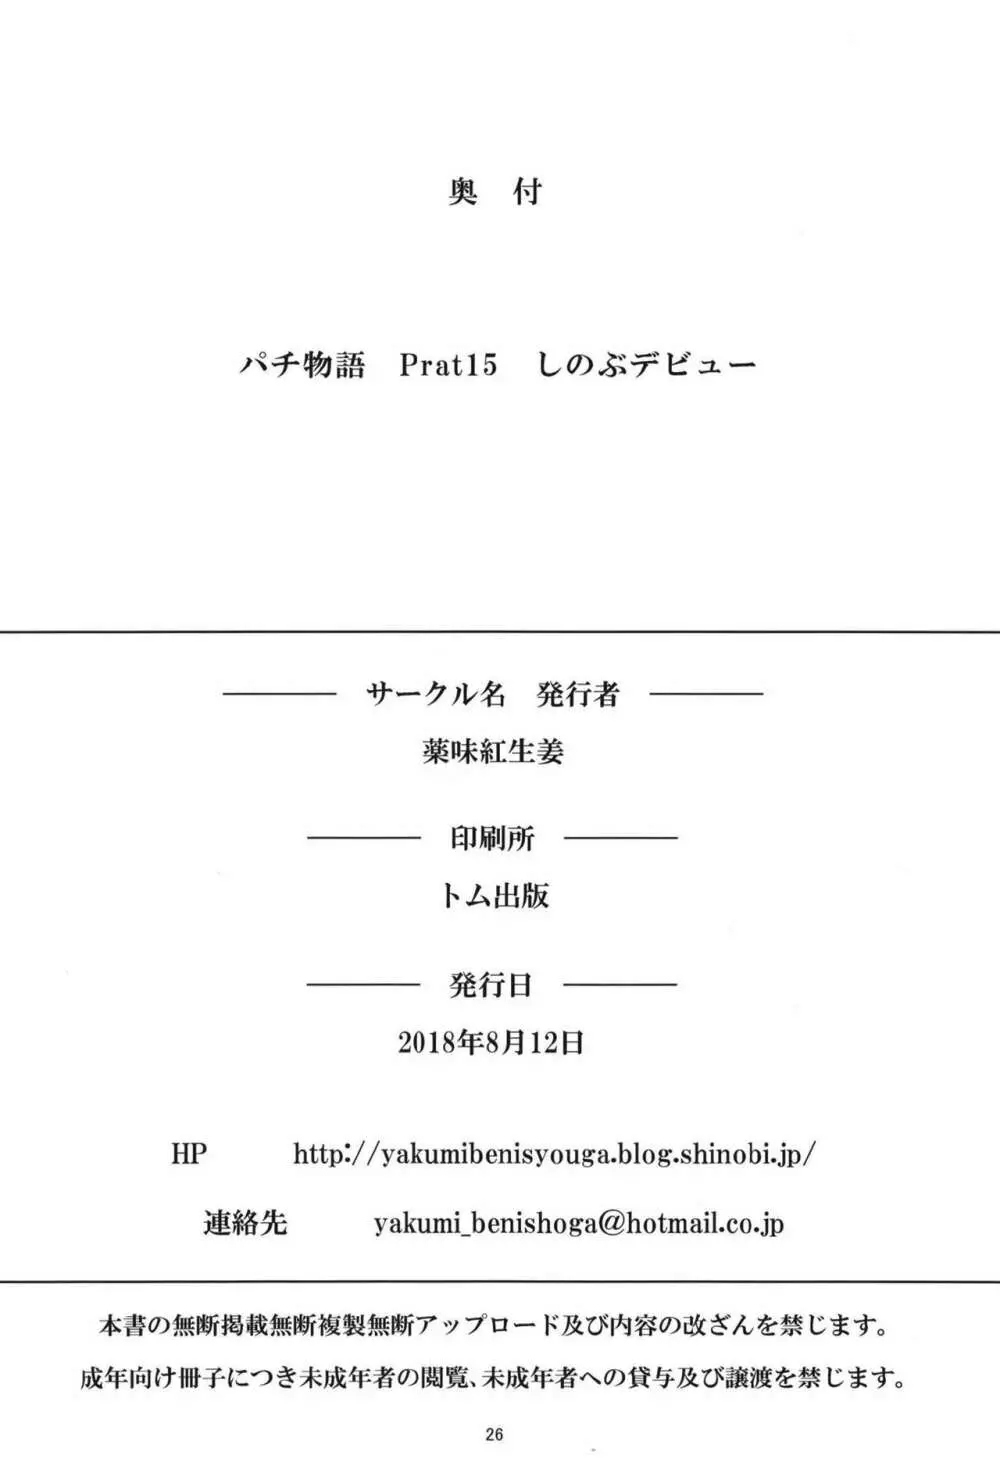 パチ物語 Part16 しのぶデビュー 26ページ